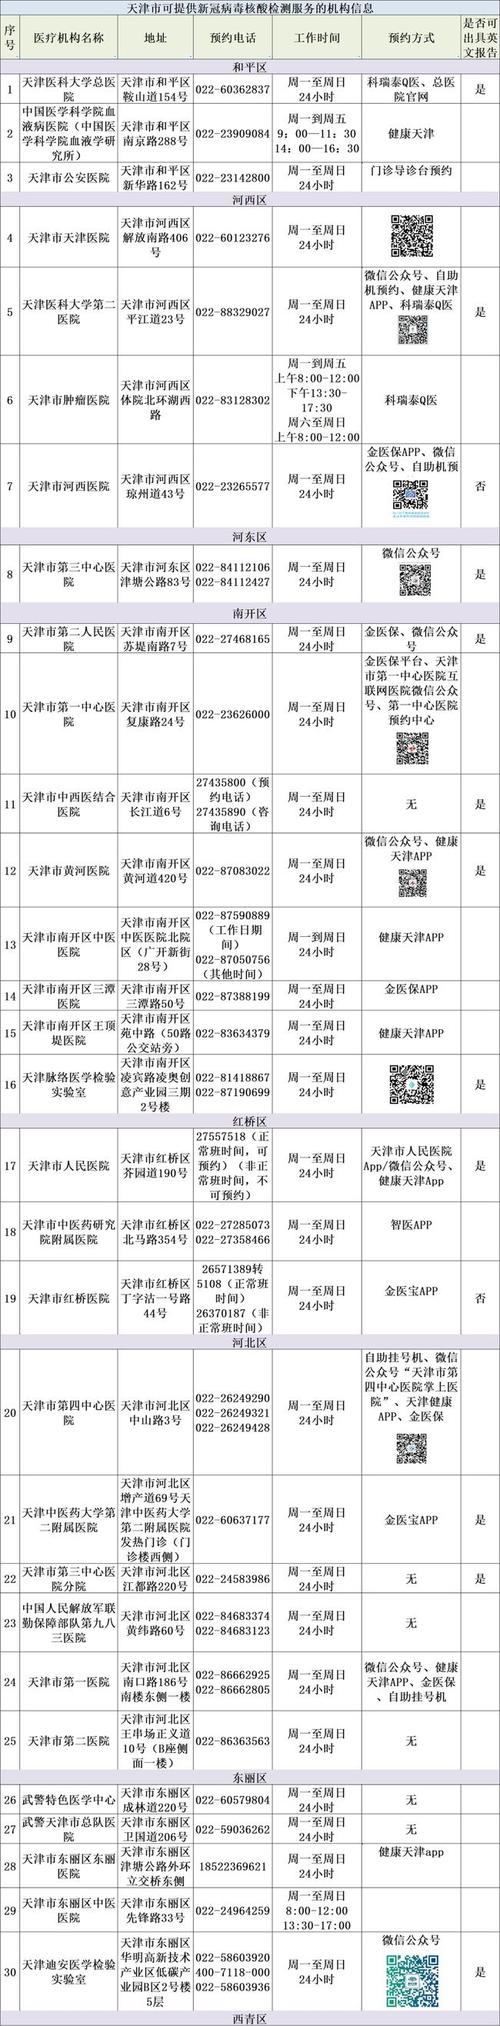 核酸检测天津有最新要求附全名单